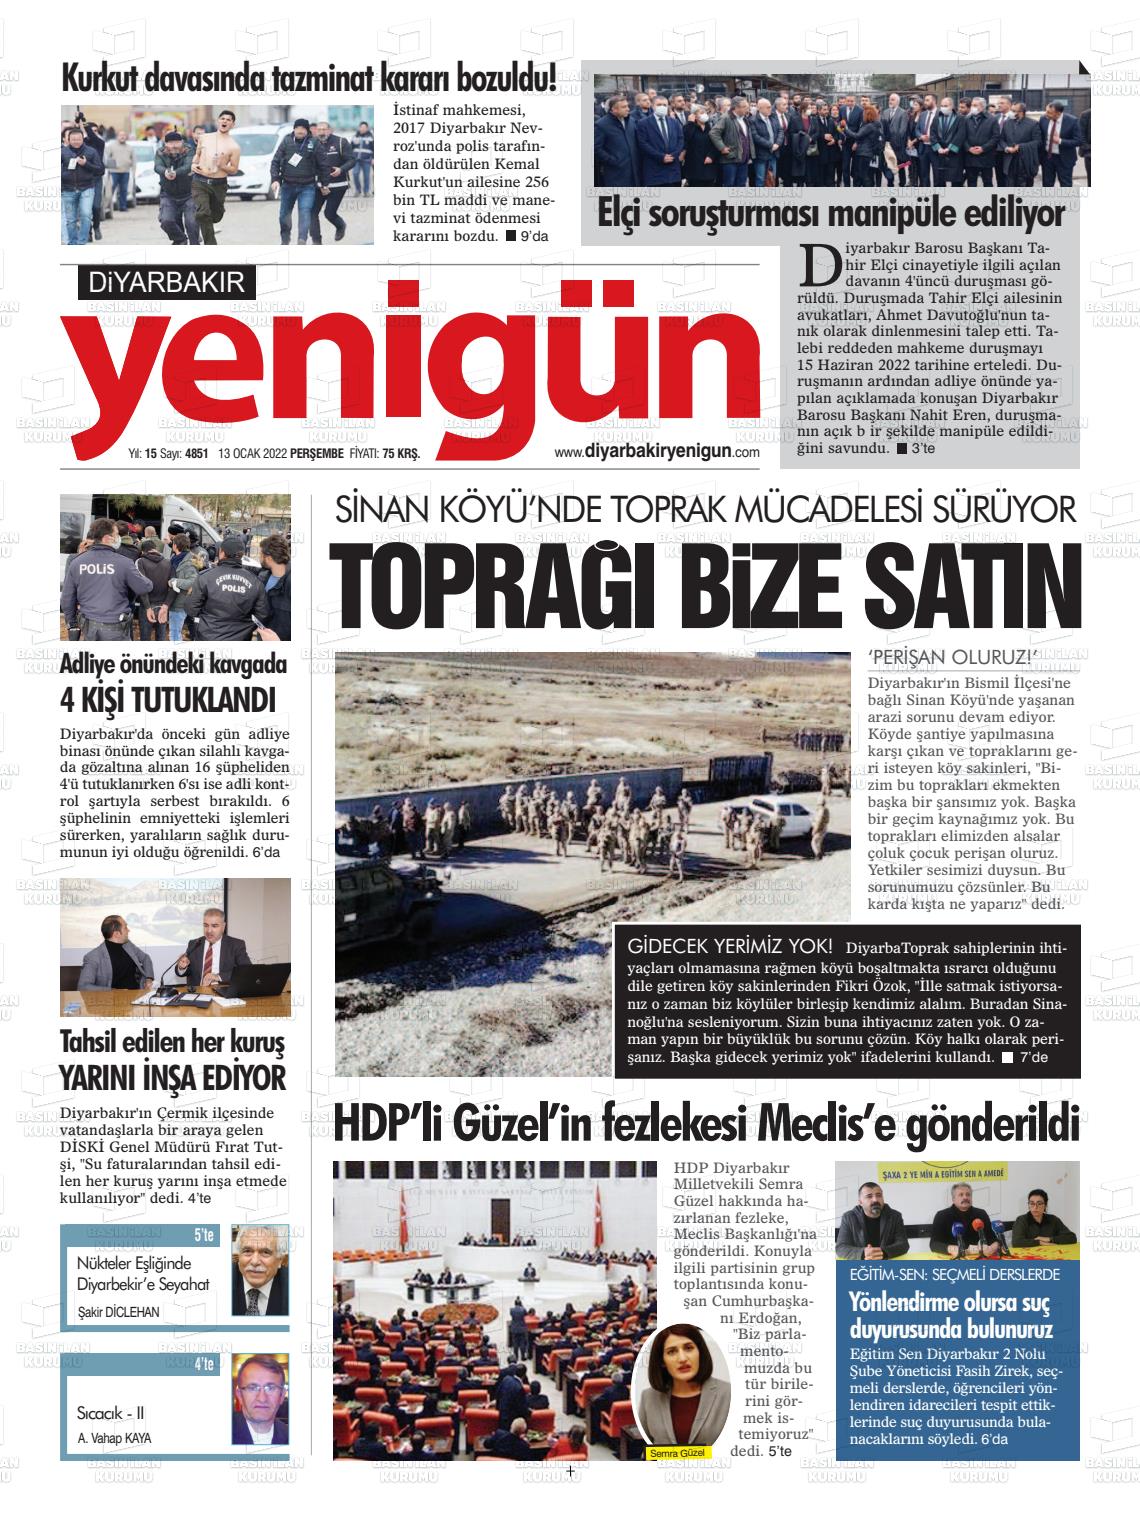 13 Ocak 2022 Diyarbakır Yenigün Gazete Manşeti